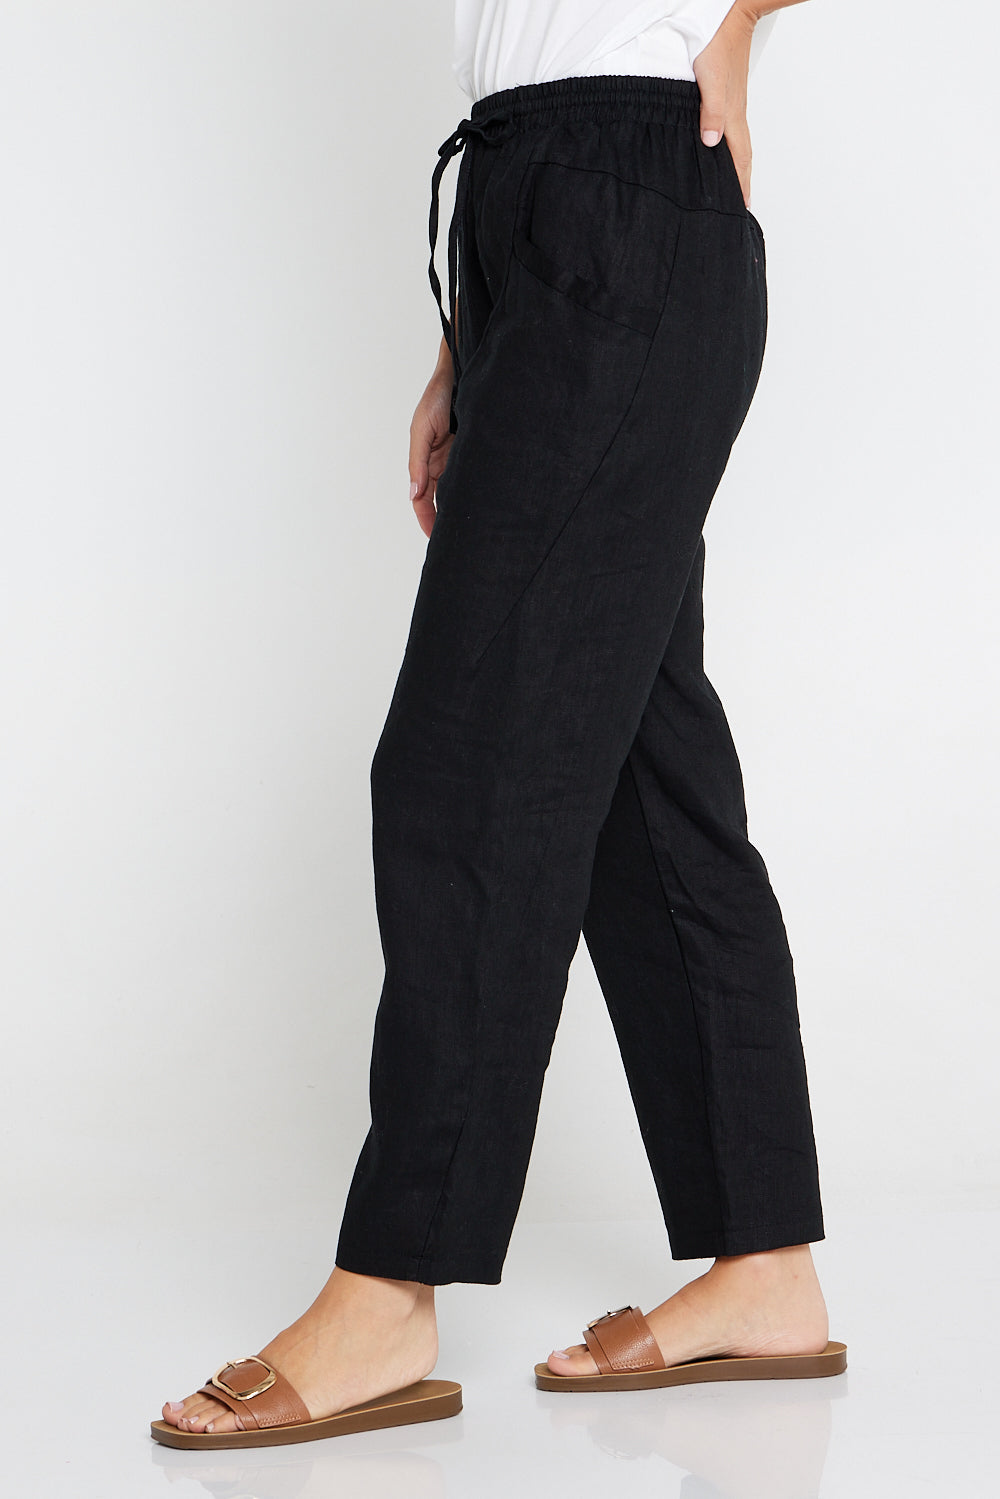 Buy Black Linen Pants. Women Linen Pants. Slack Women Pants. Linen Trousers.  Basic Linen Pants. 100% Pure Linen italy Online in India - Etsy